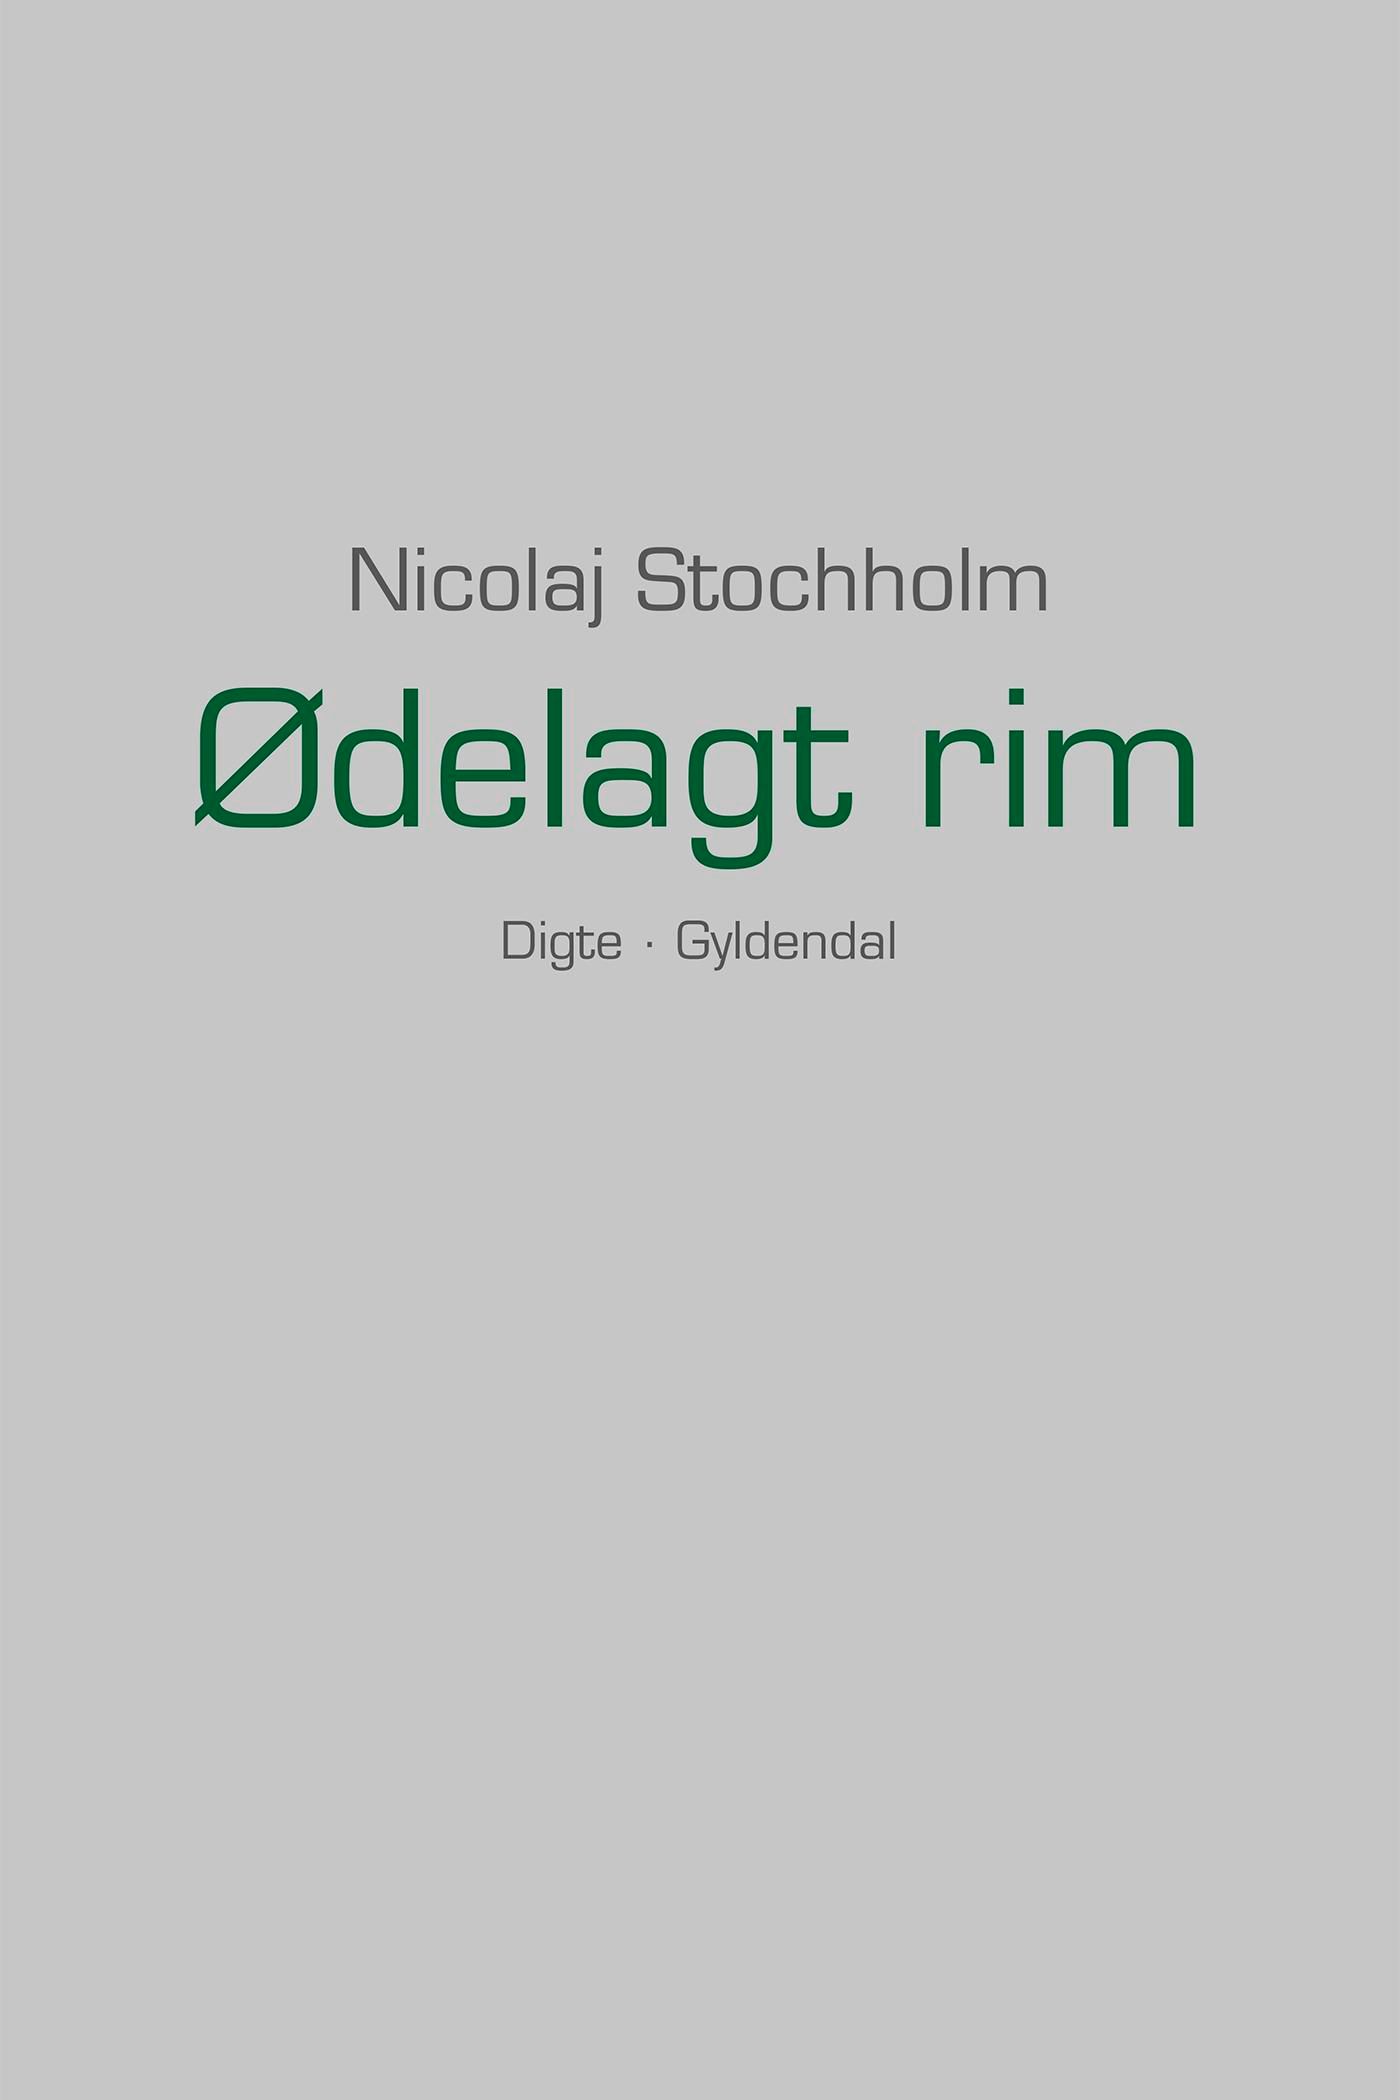 Ødelagt rim, e-bog af Nicolaj Stochholm